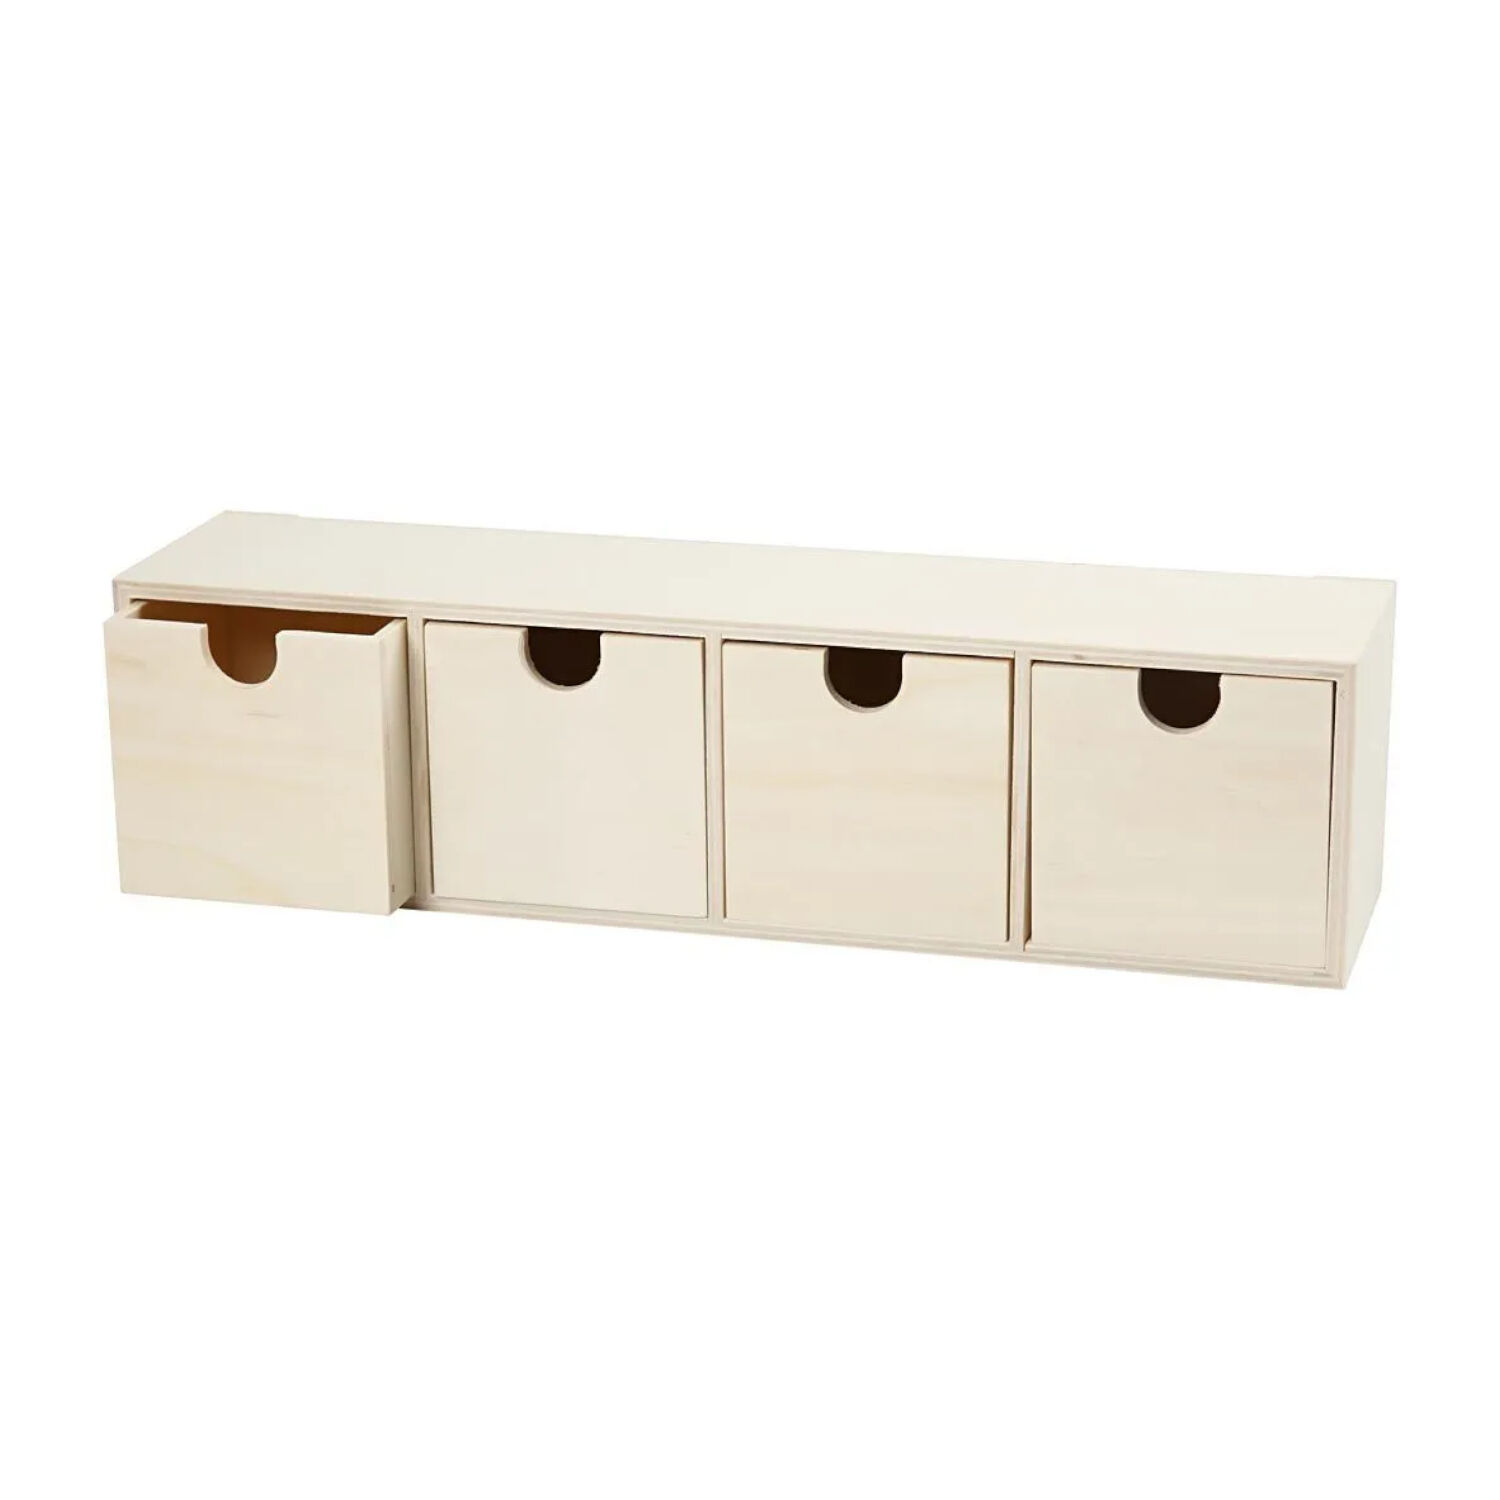 NEU Holzkasten mit 4 Boxen / Schubladenbox, Gre: 9,2 x 34,7 cm, 1 Stck